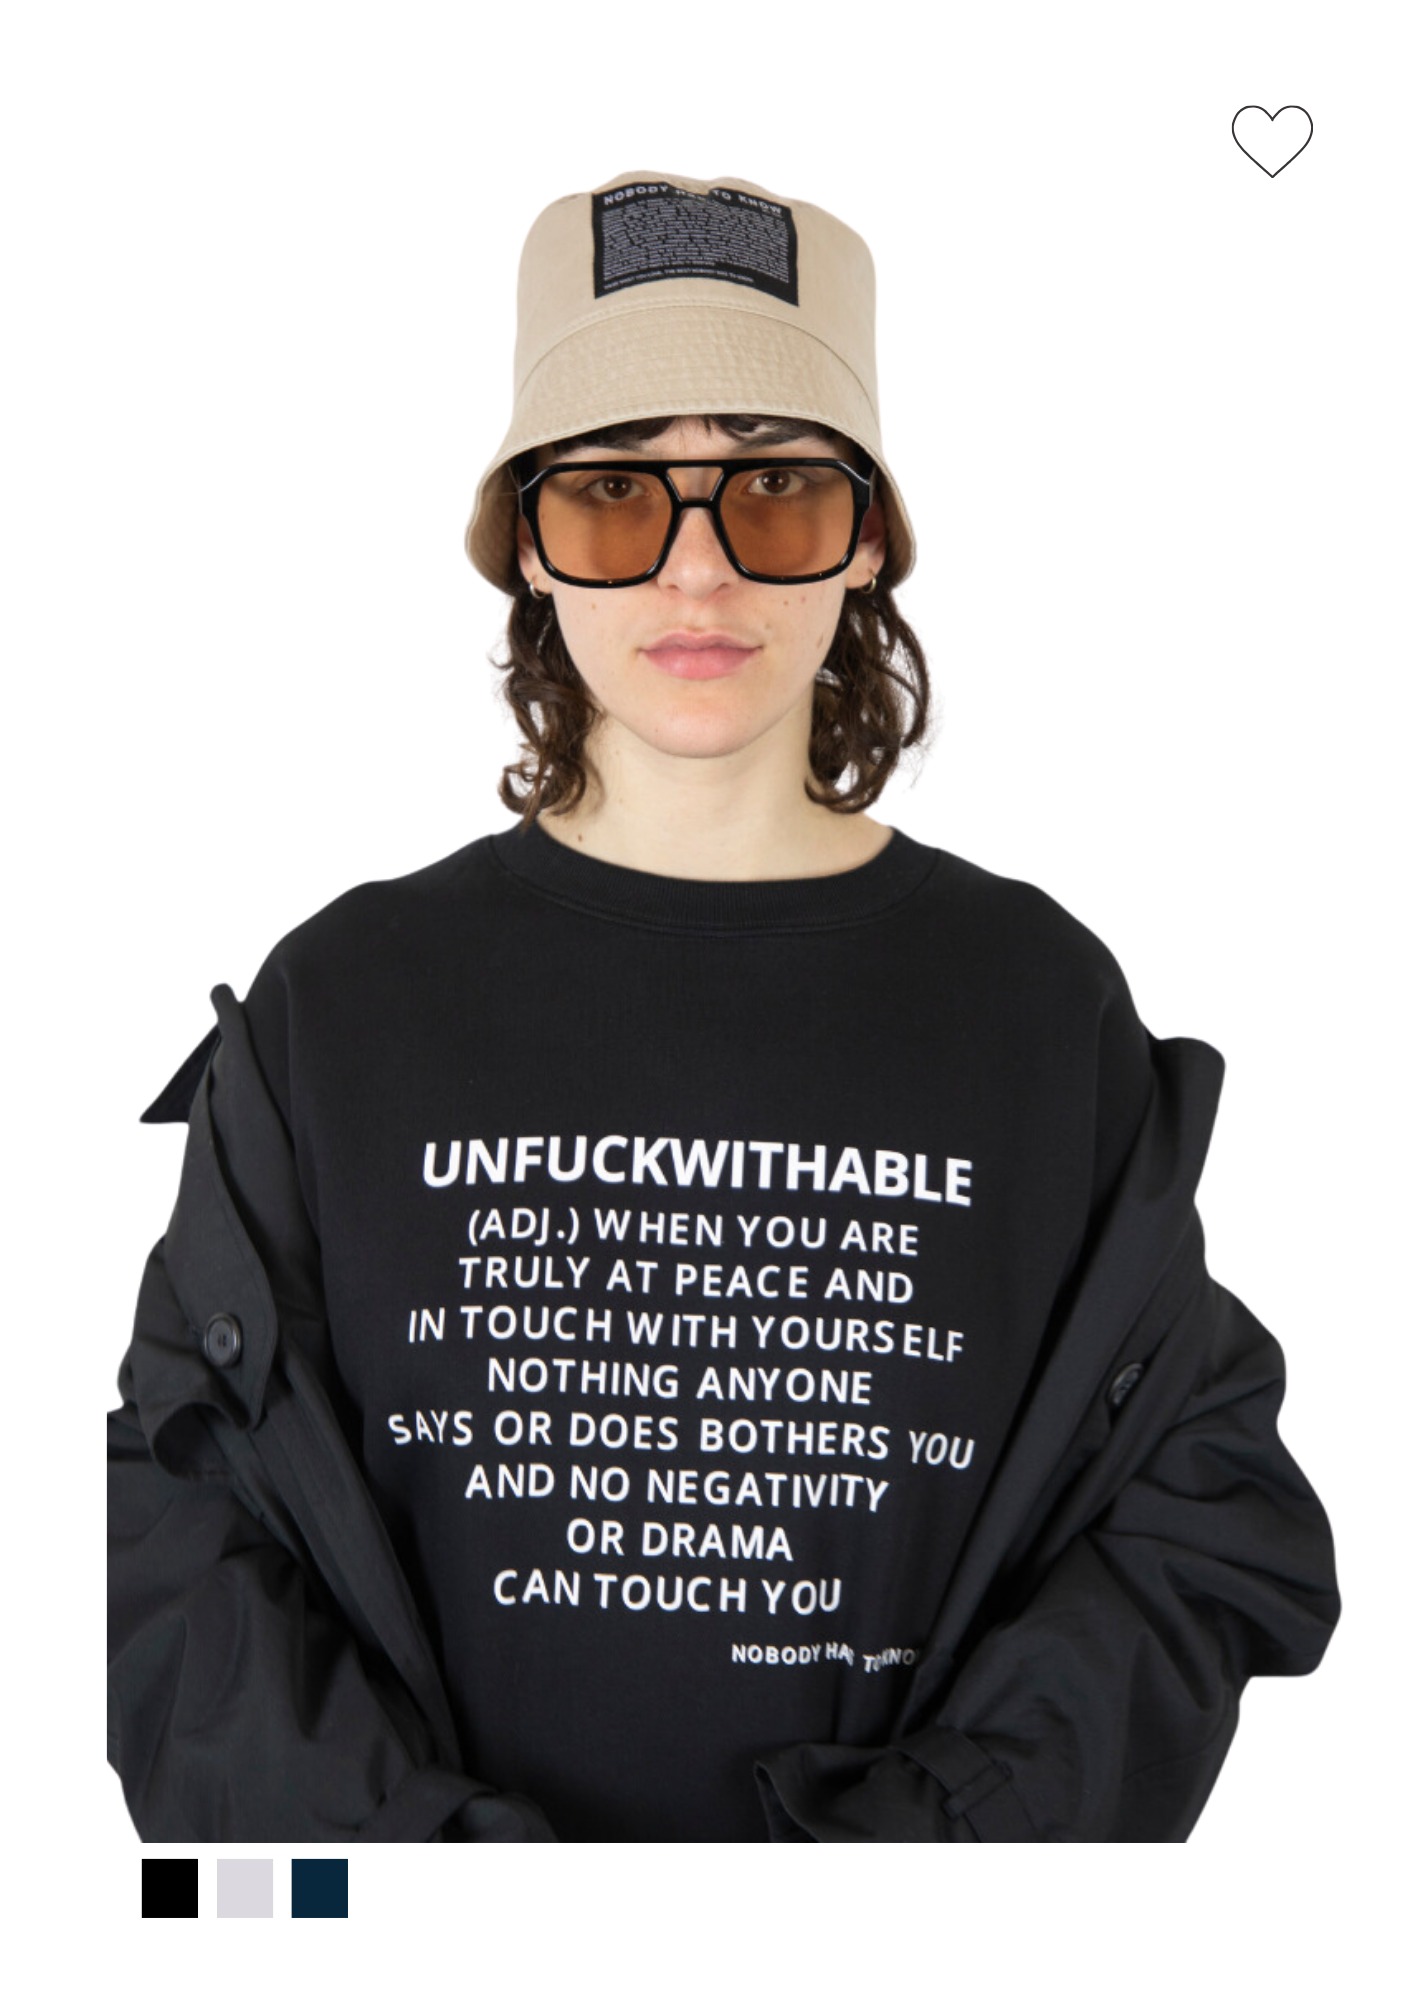 Unfuckwithable sweater